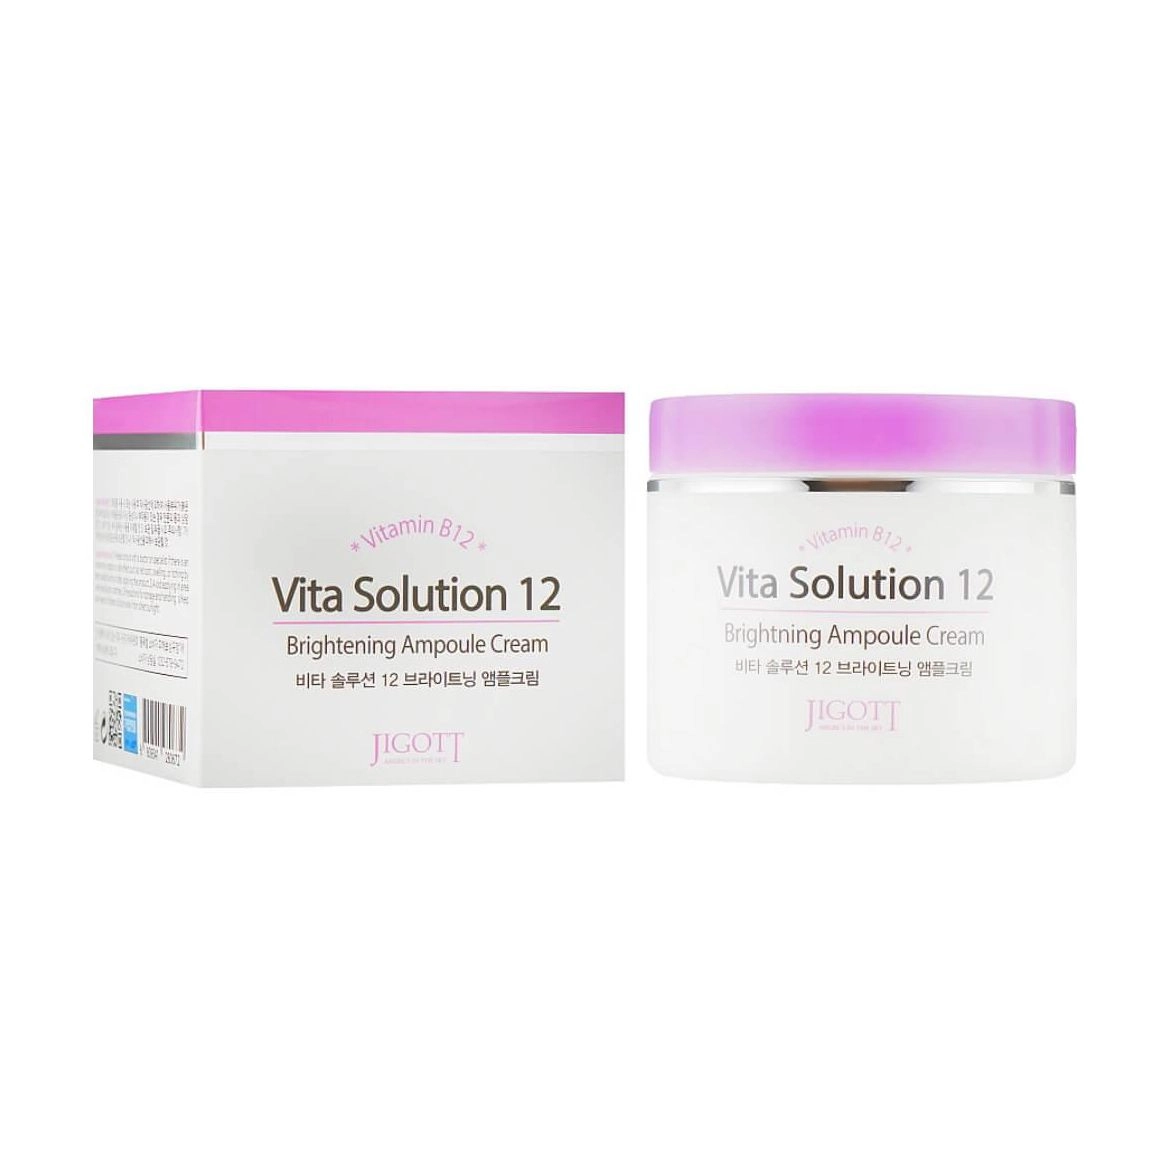 Ампульный крем для улучшения цвета лица с витамином В12 - Jigott Vita Solution 12 Brightening Ampoule Cream, 100 мл - фото N3